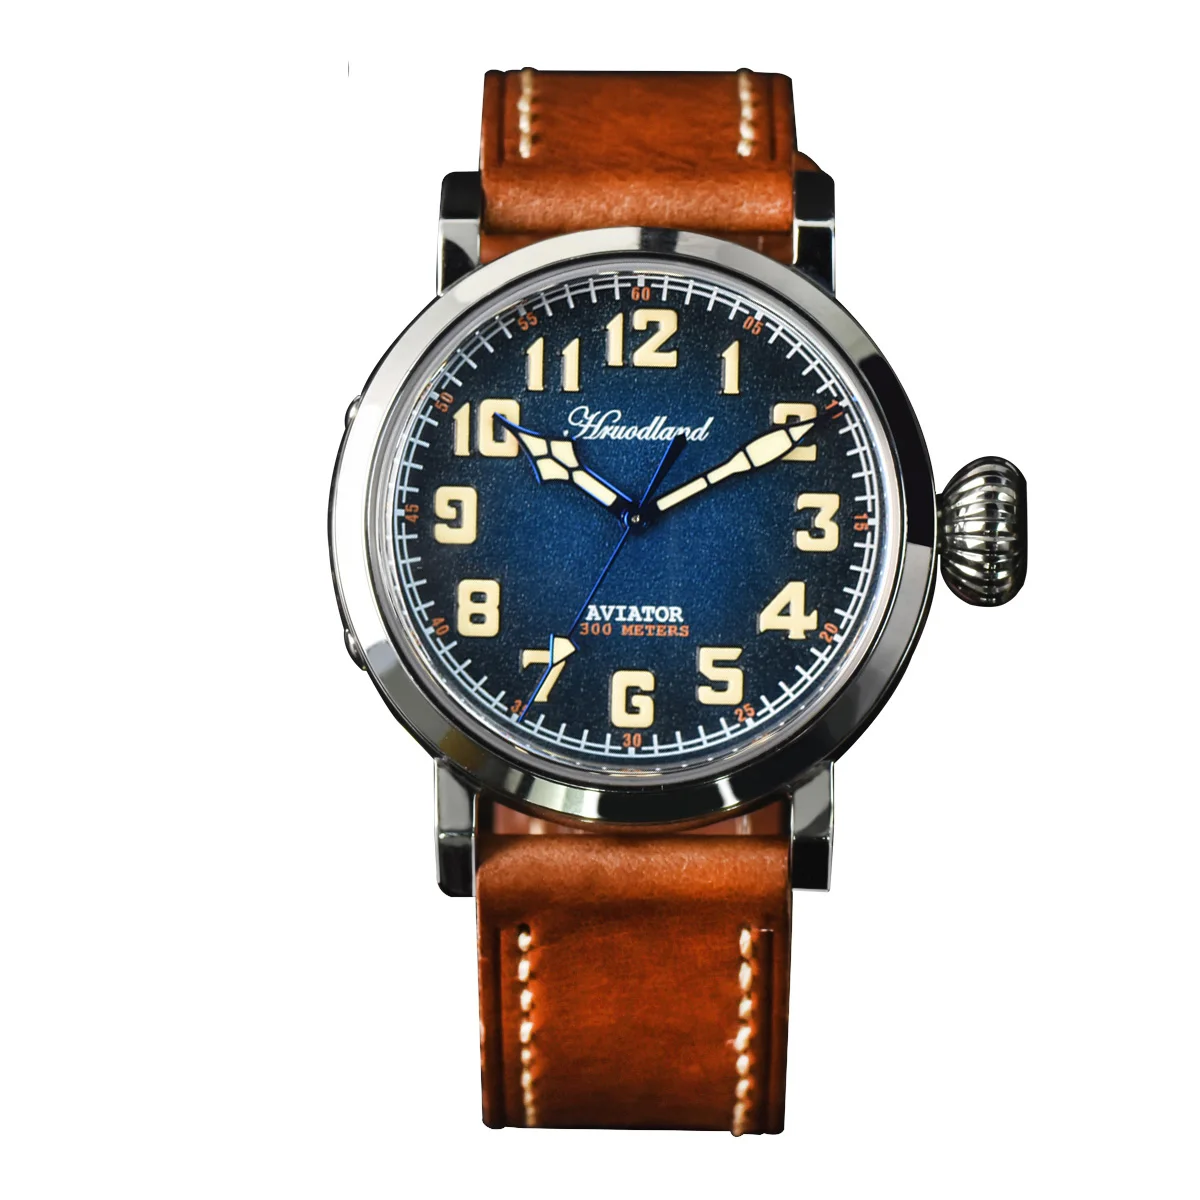 

Часы-пилот Hruodland мужские с синим циферблатом 43 мм, сапфировым стеклом и автоматическим движением, водостойкие, механические, с кожаным ремеш...